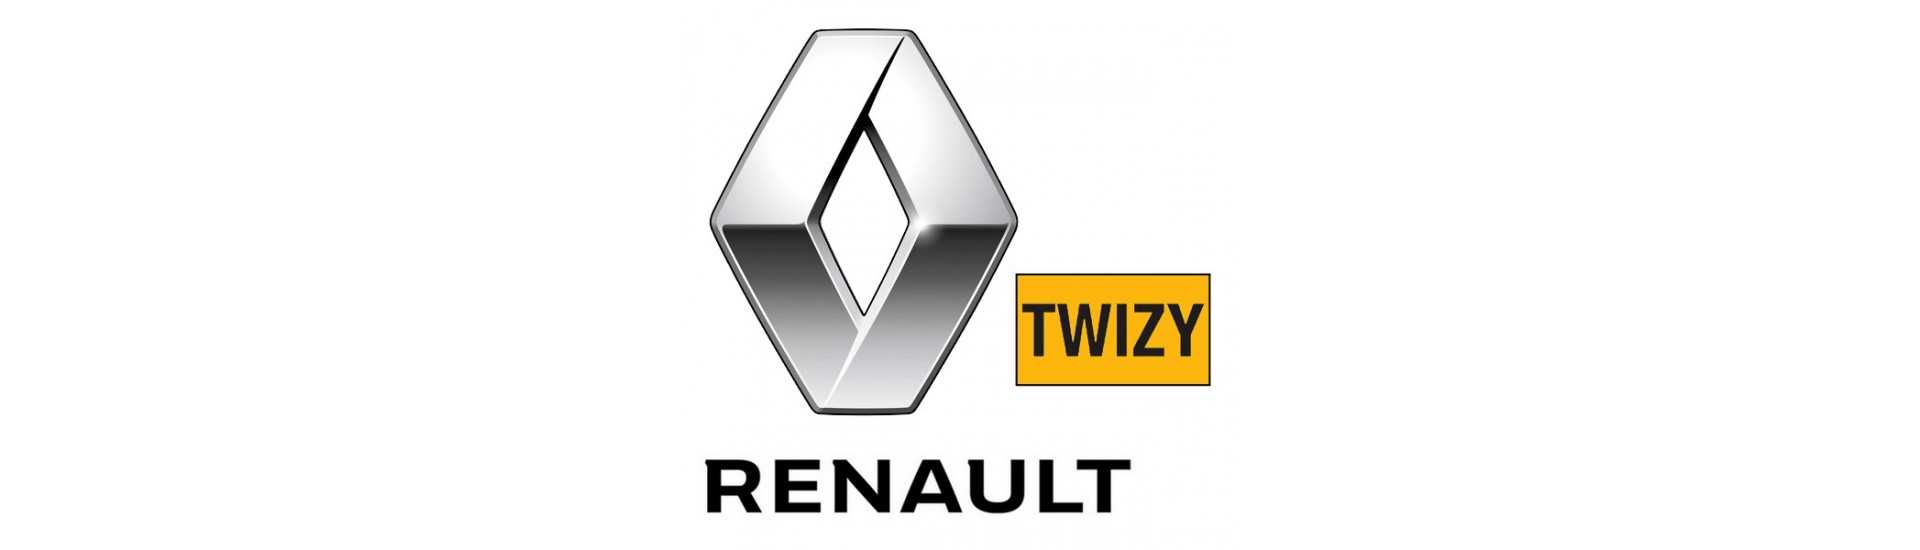 Komodo zum besten Preis für Auto ohne Lizenz Renault Twizy